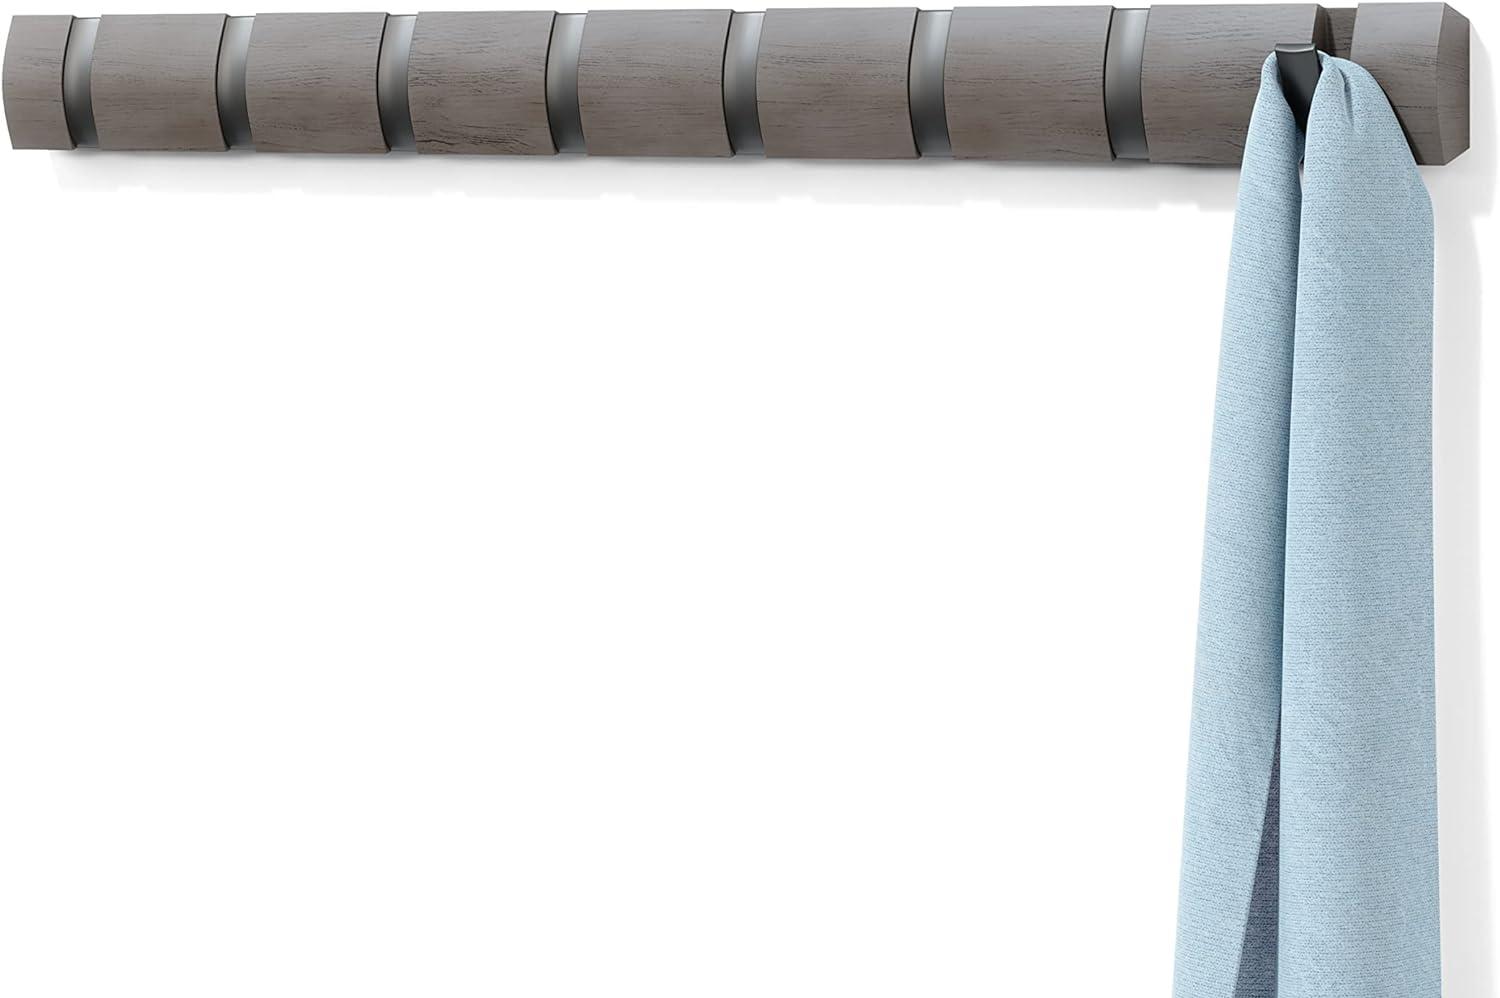 UMBRA Flip Garderobenhaken – Moderne, Schlichte und Platzsparende Garderobenleiste mit 8 Beweglichen Haken für Jacken, Mäntel, Schals, Handtaschen und Mehr, Ashwood, Grau/Silber, 8er Bild 1